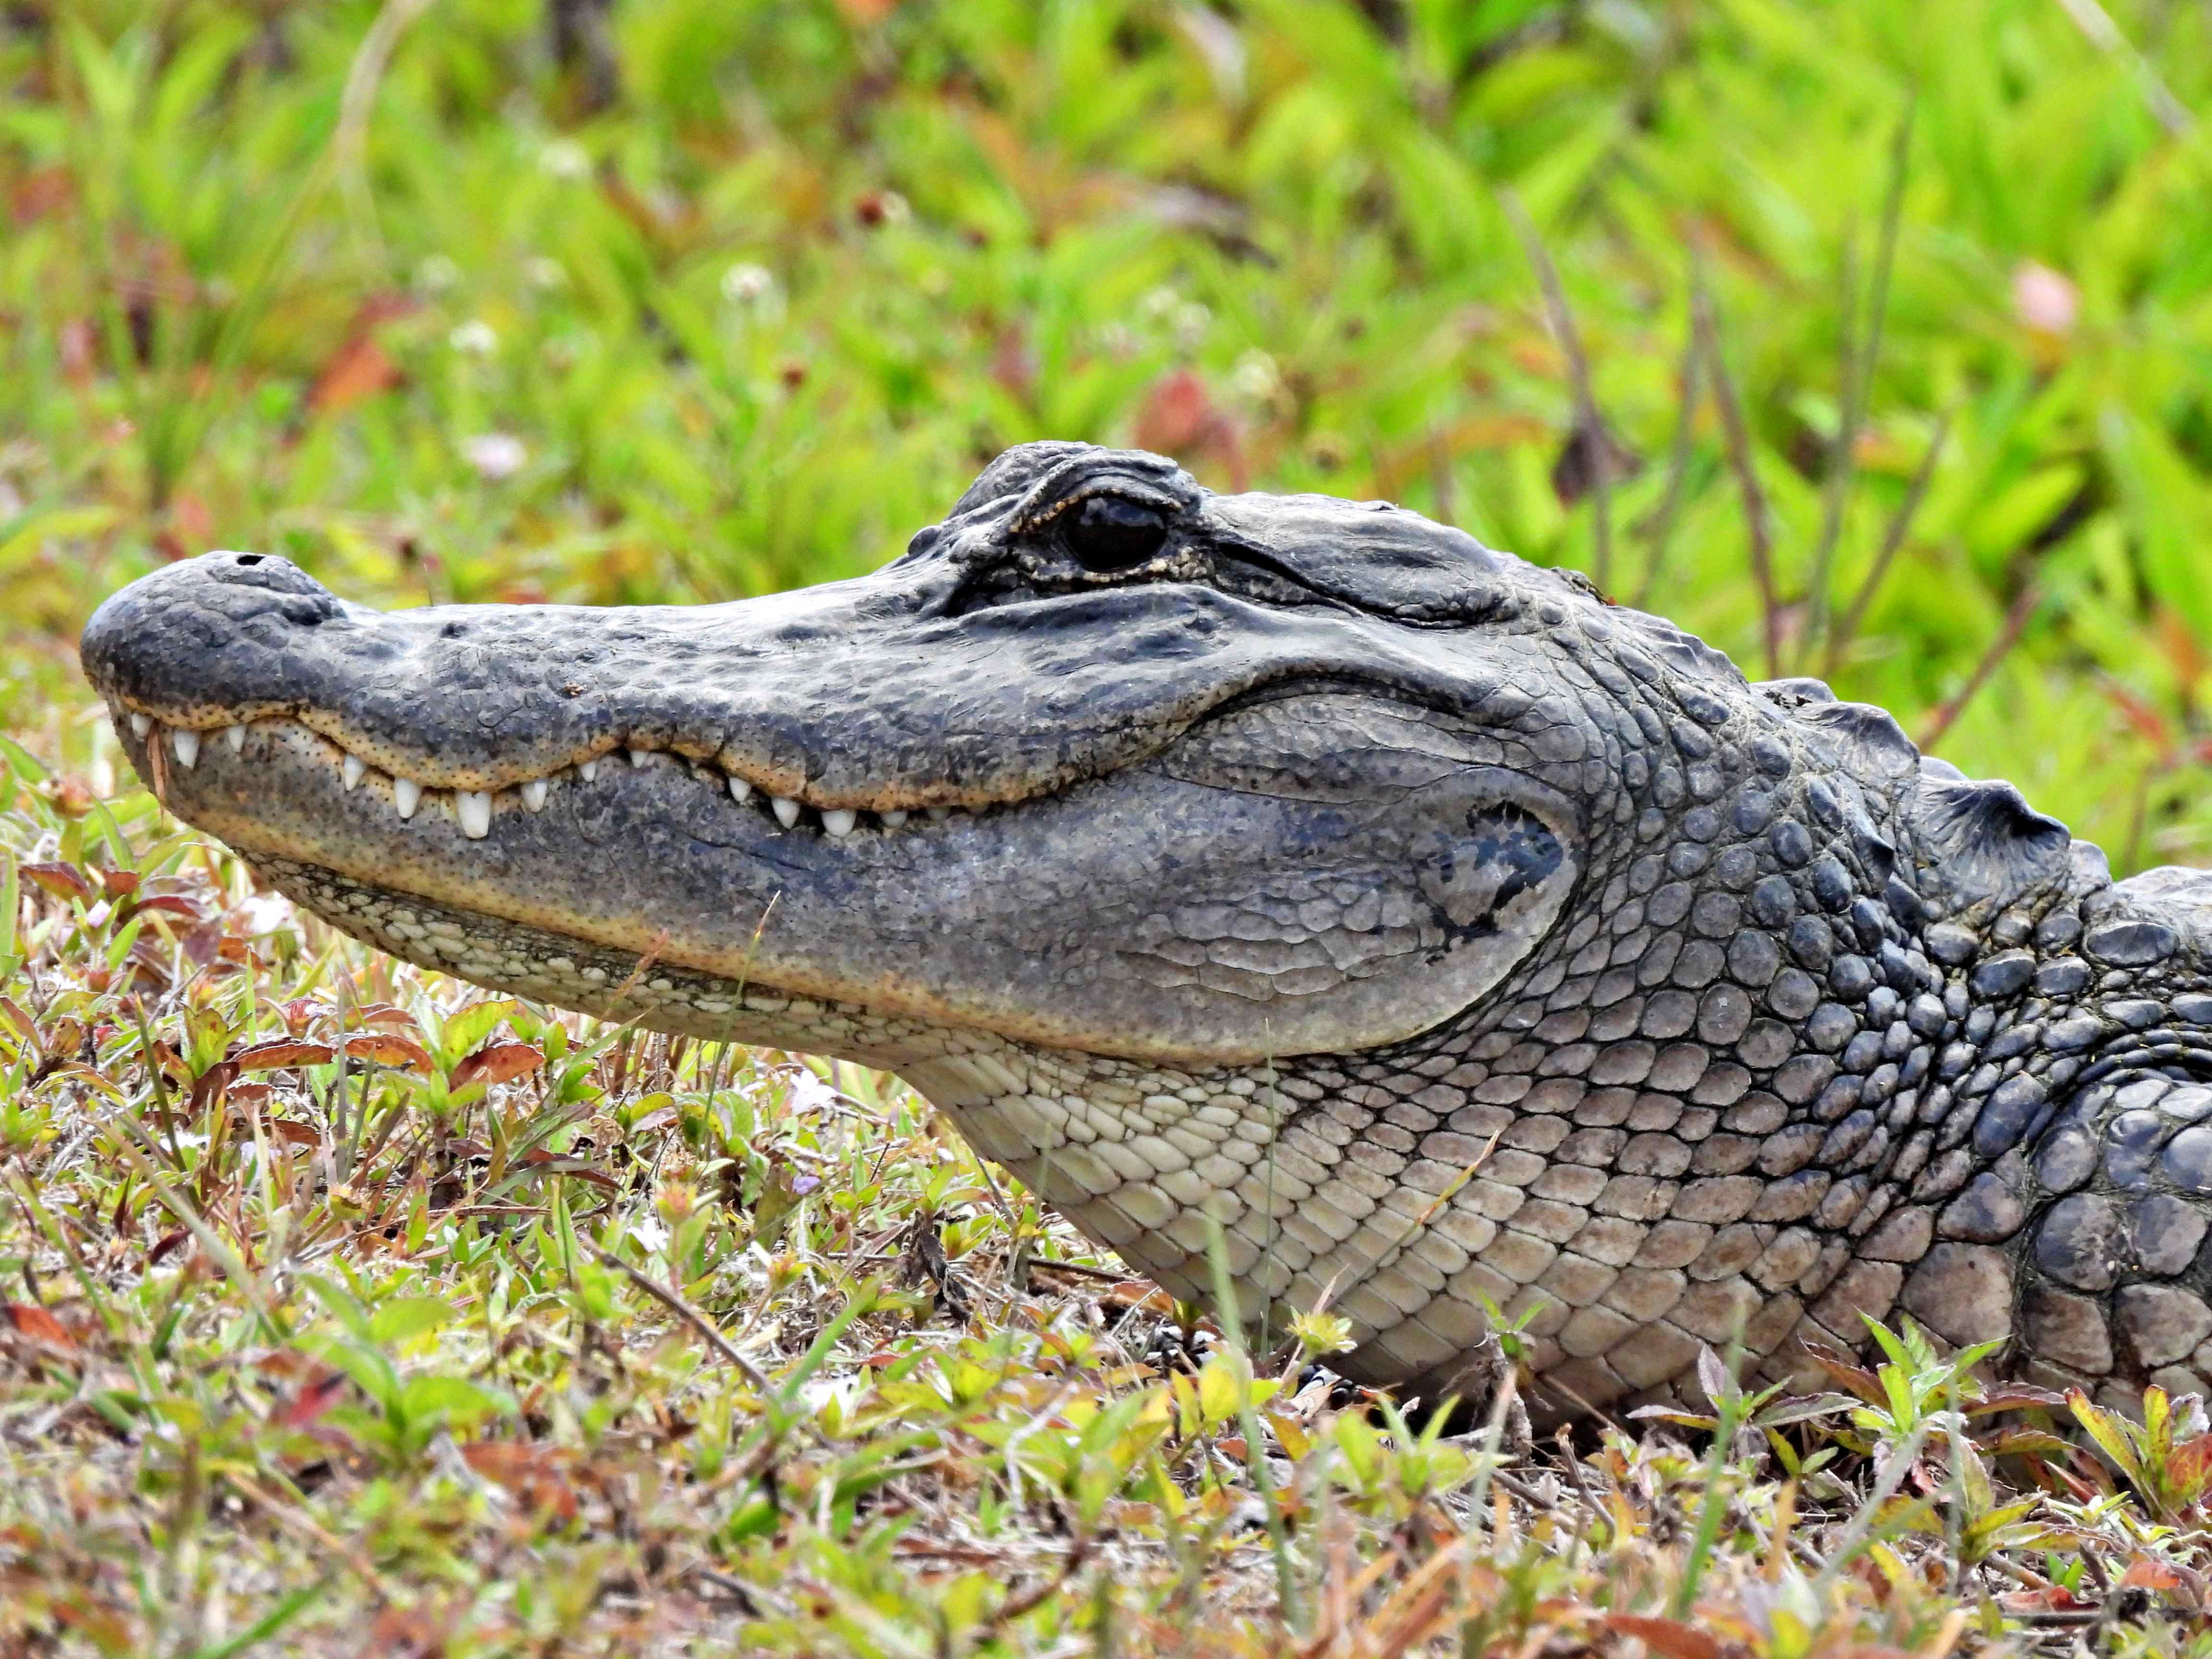 an alligator